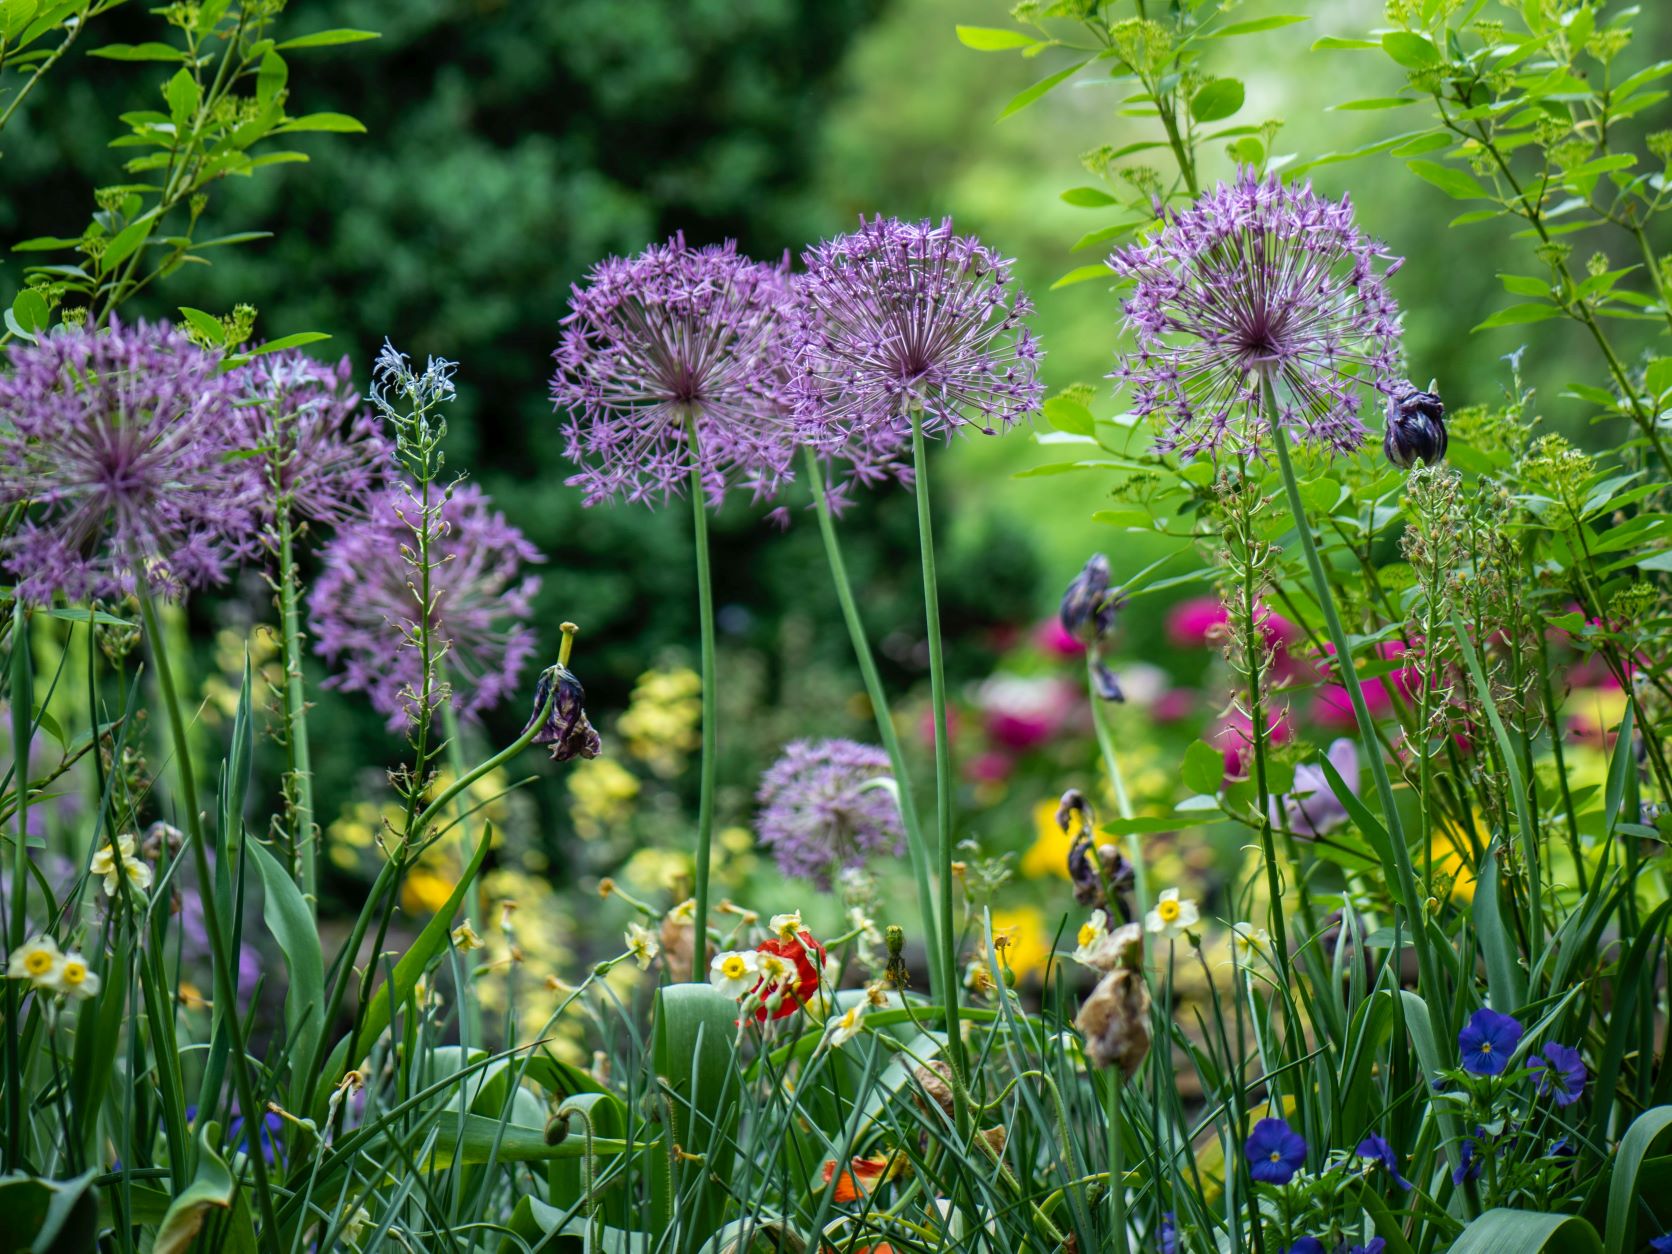 haver | Sådan får du en smuk have, der summer af liv - Danmarks Naturfredningsforening